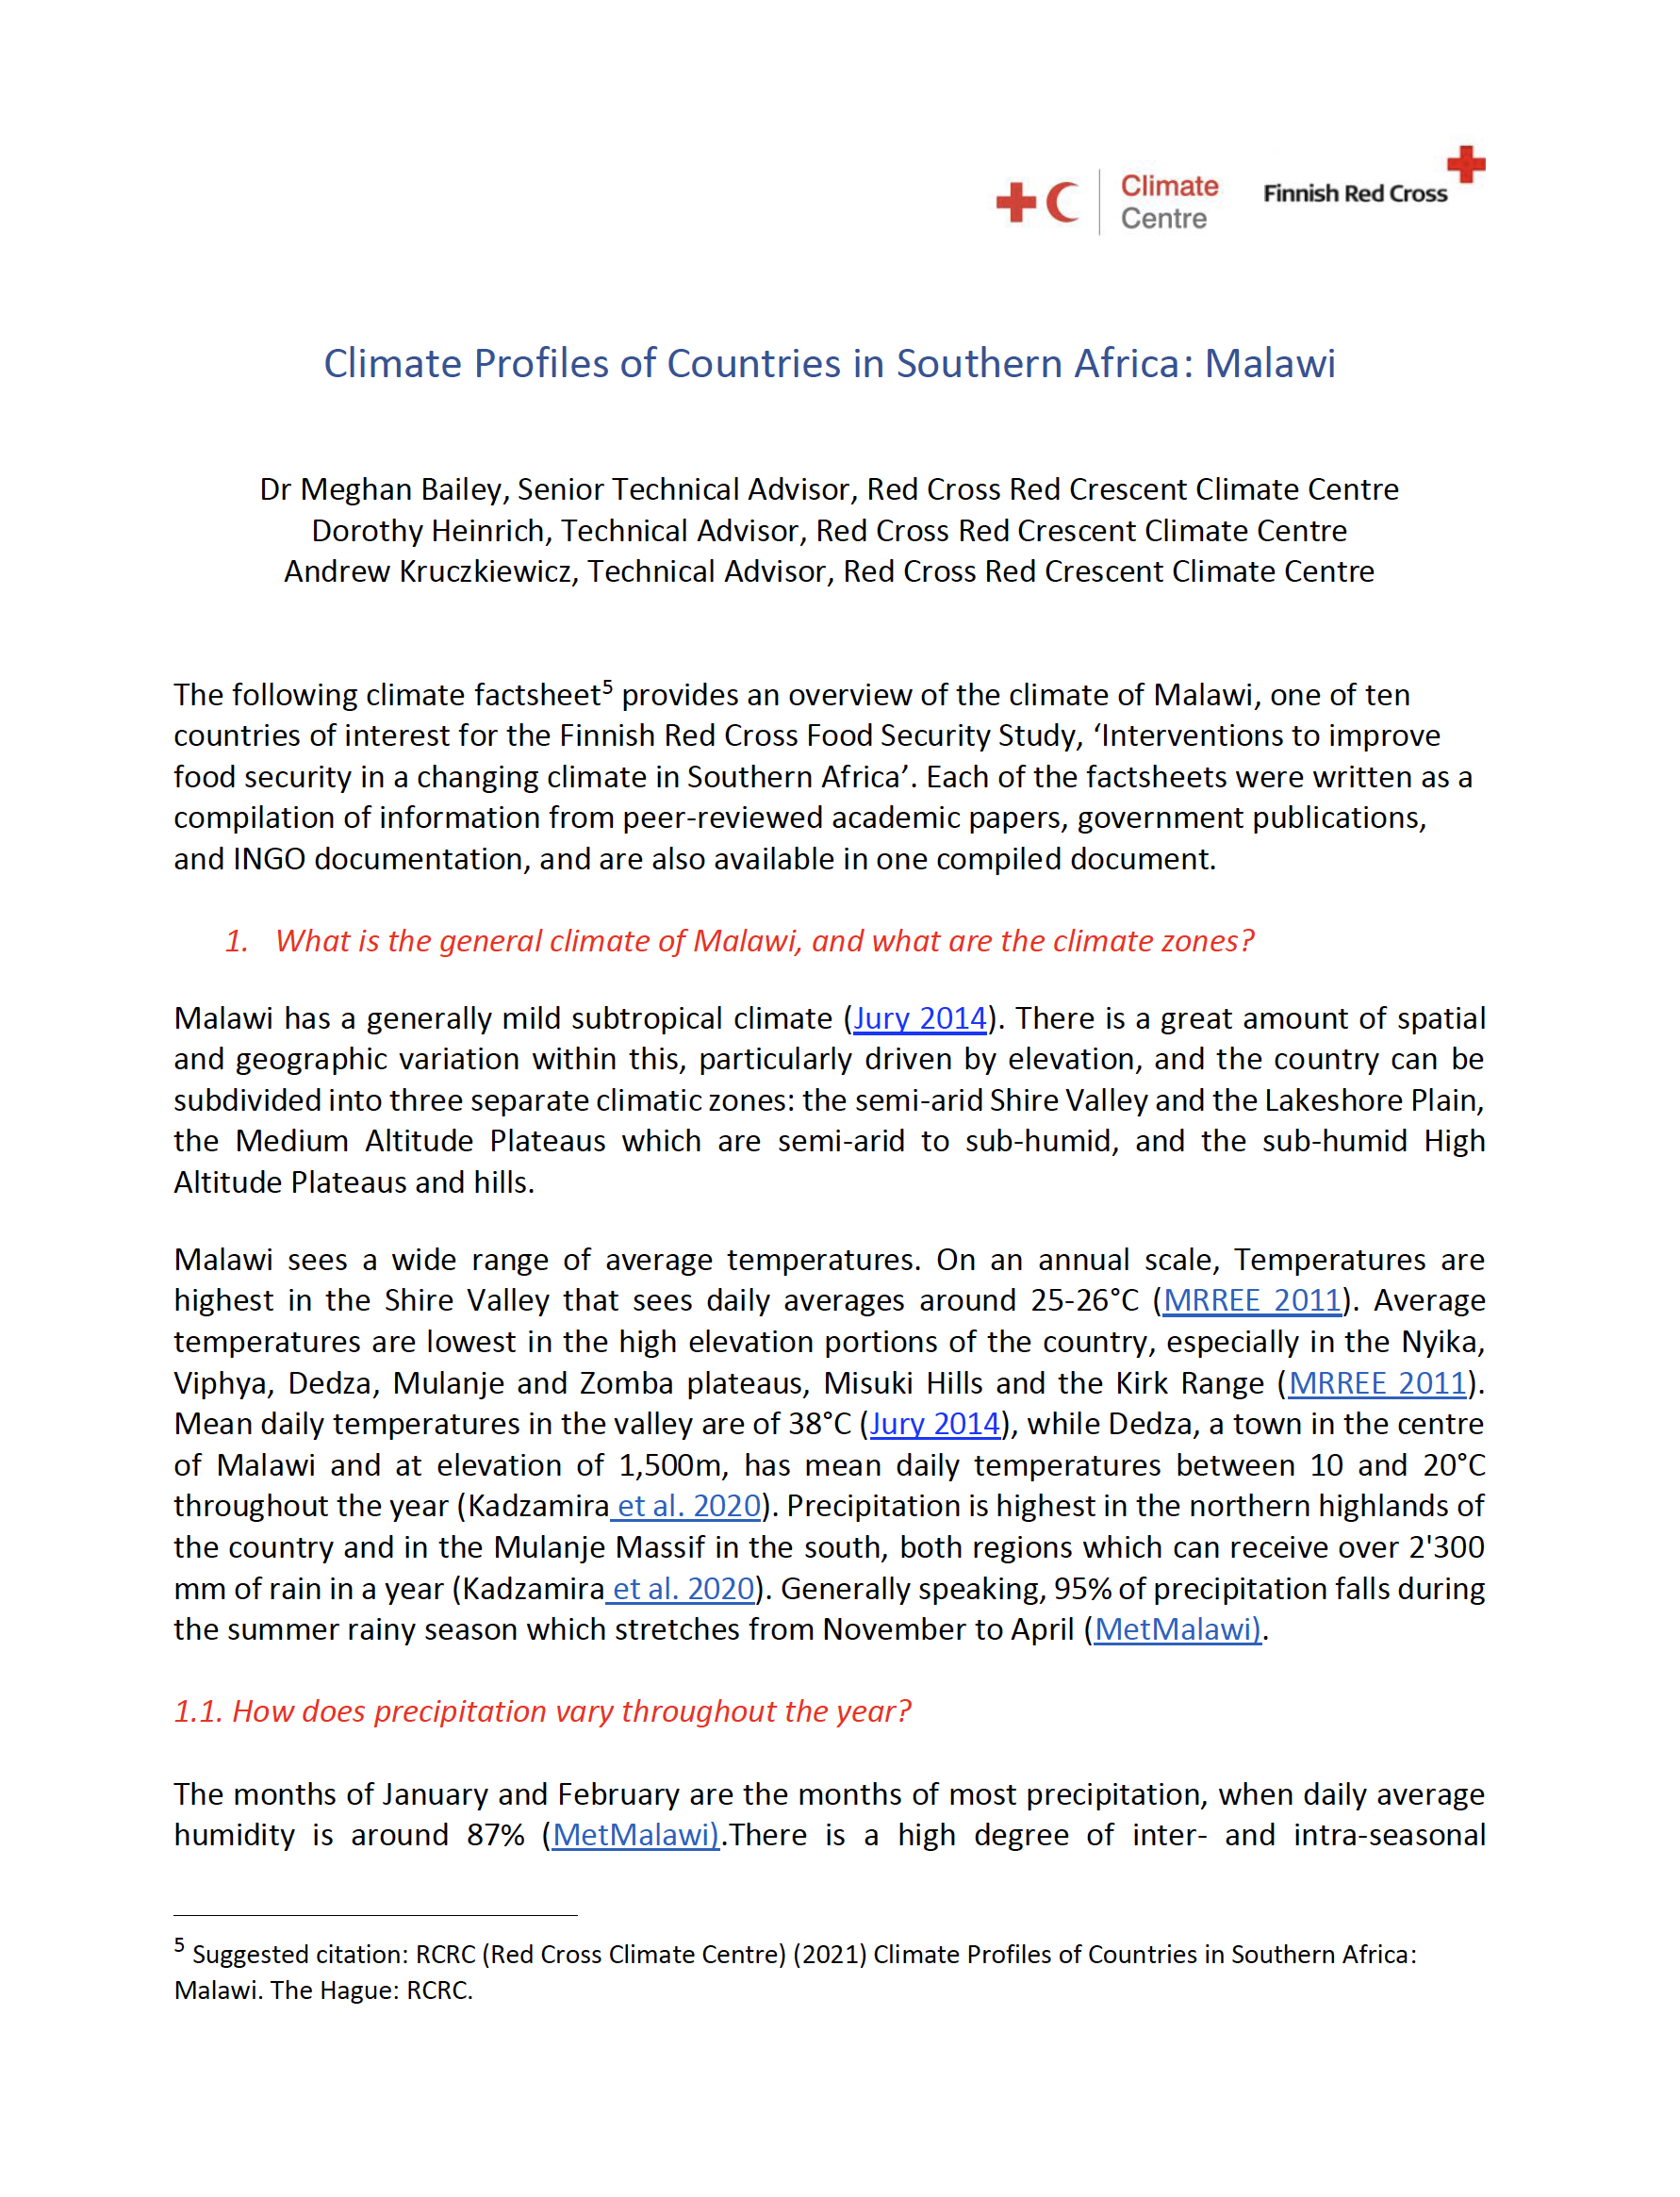 Climate Factsheet Malawi